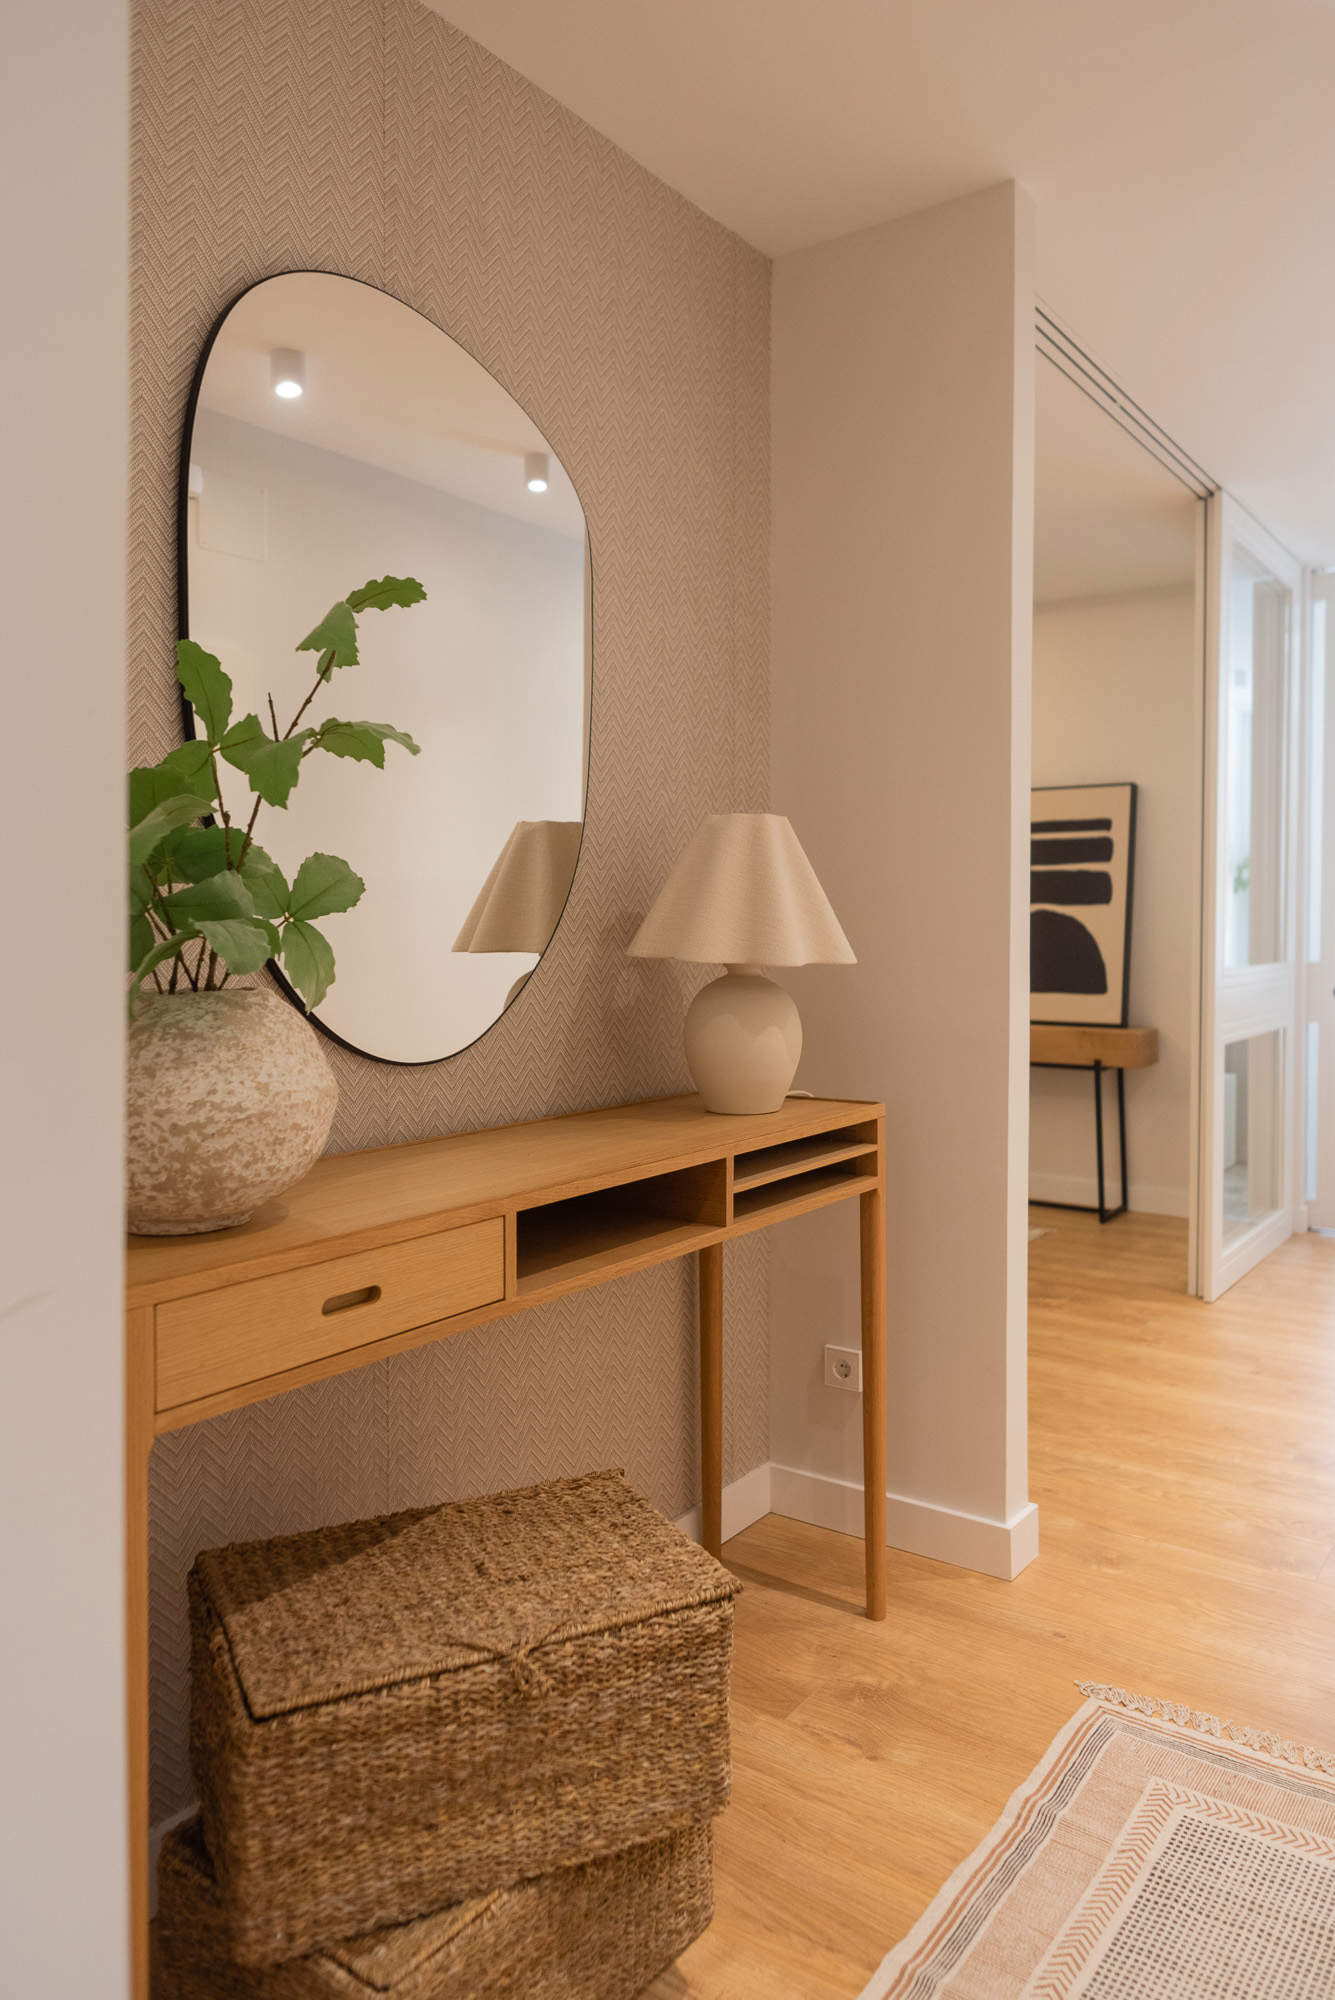 Recibidor con papel pintado, mueble de madera y espejo redondo por Deco Living